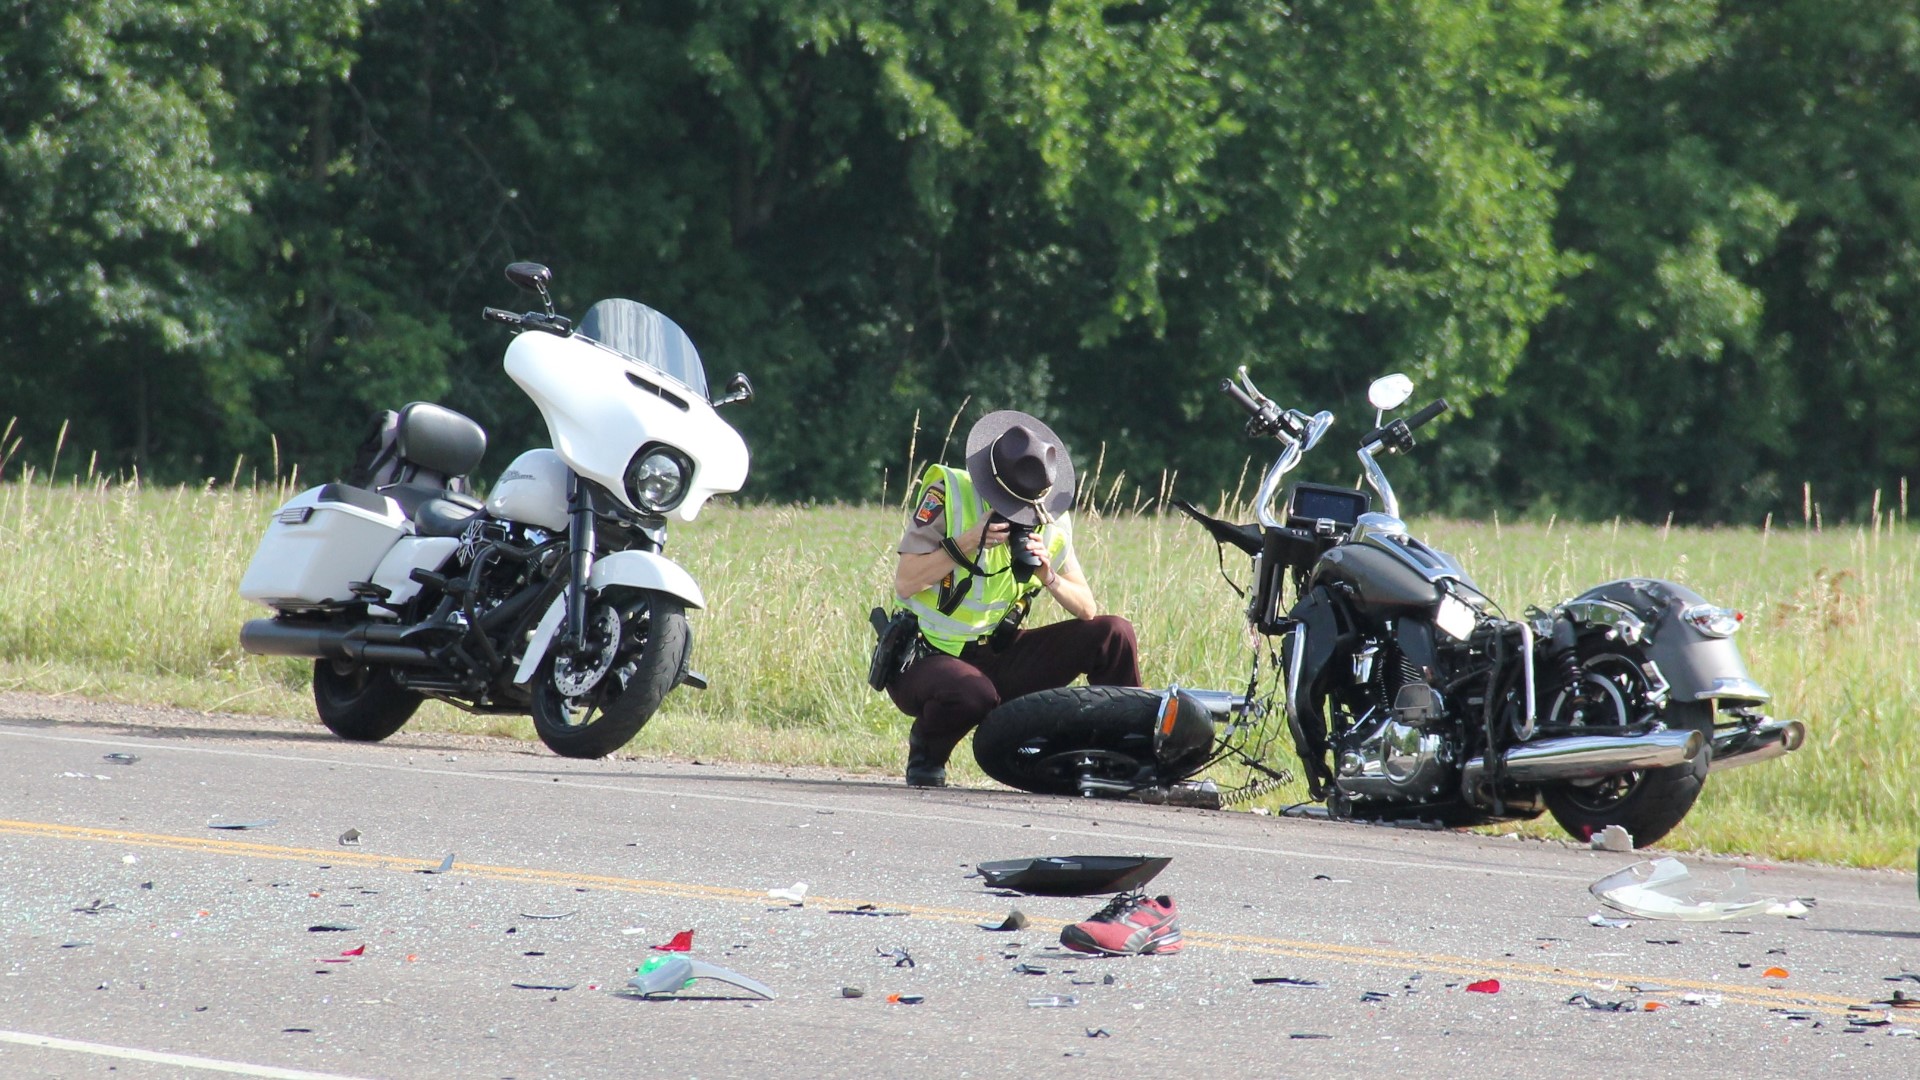 1 motorcyclist dead, 6 injured after crash in central MN | kare11.com